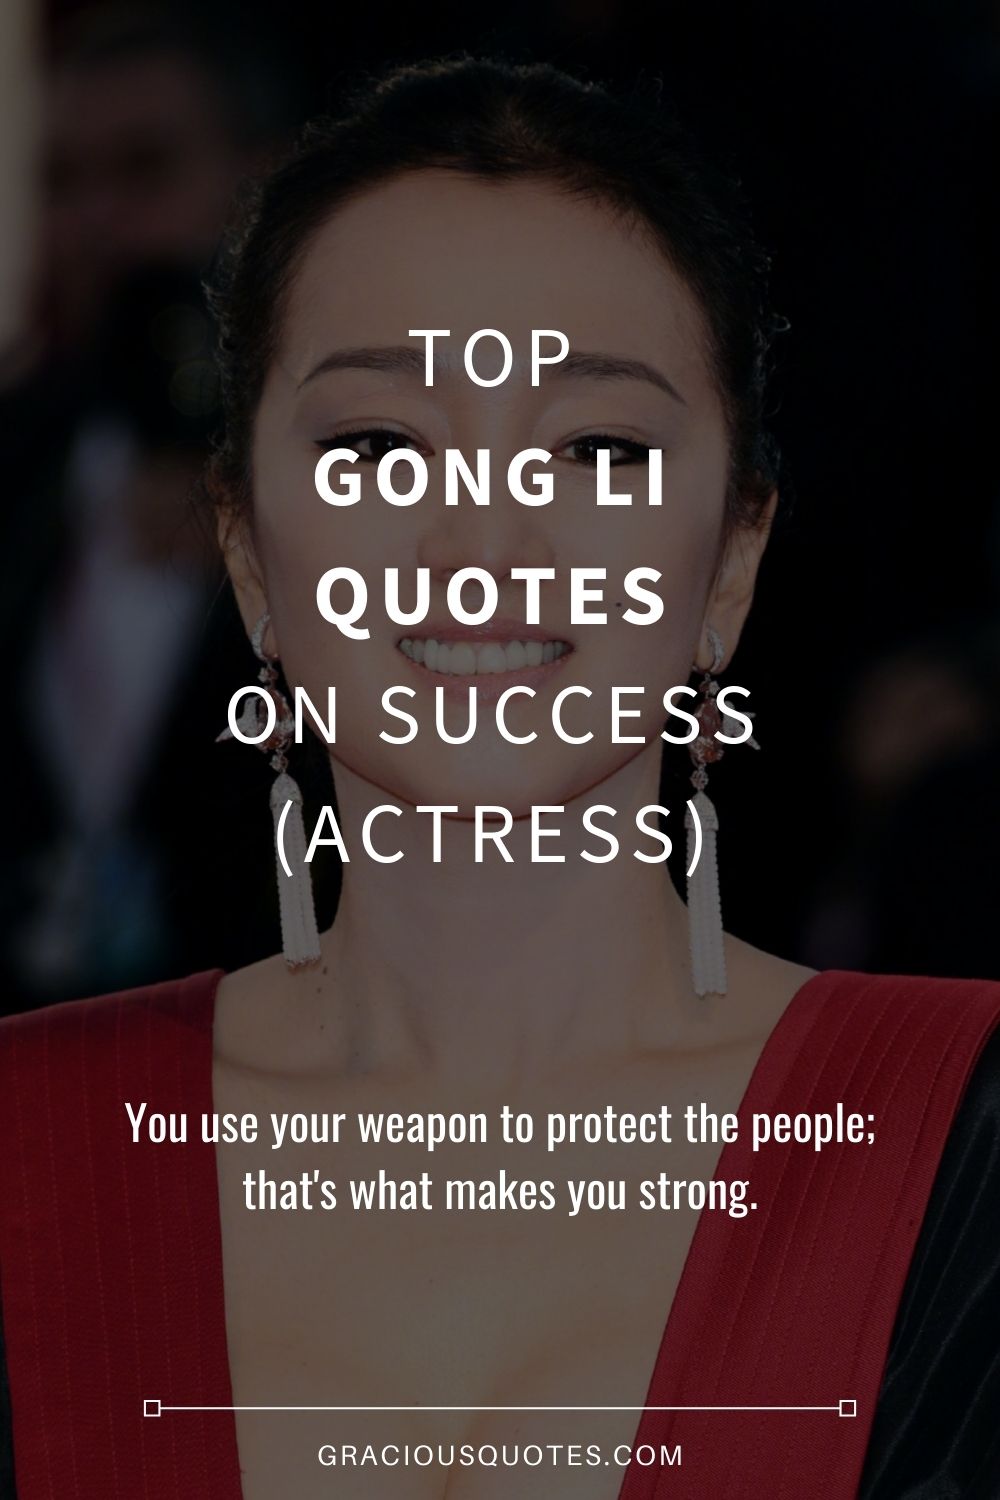 Top Gong Li Quotes on Success (ACTRESS) - Gracious Quotes